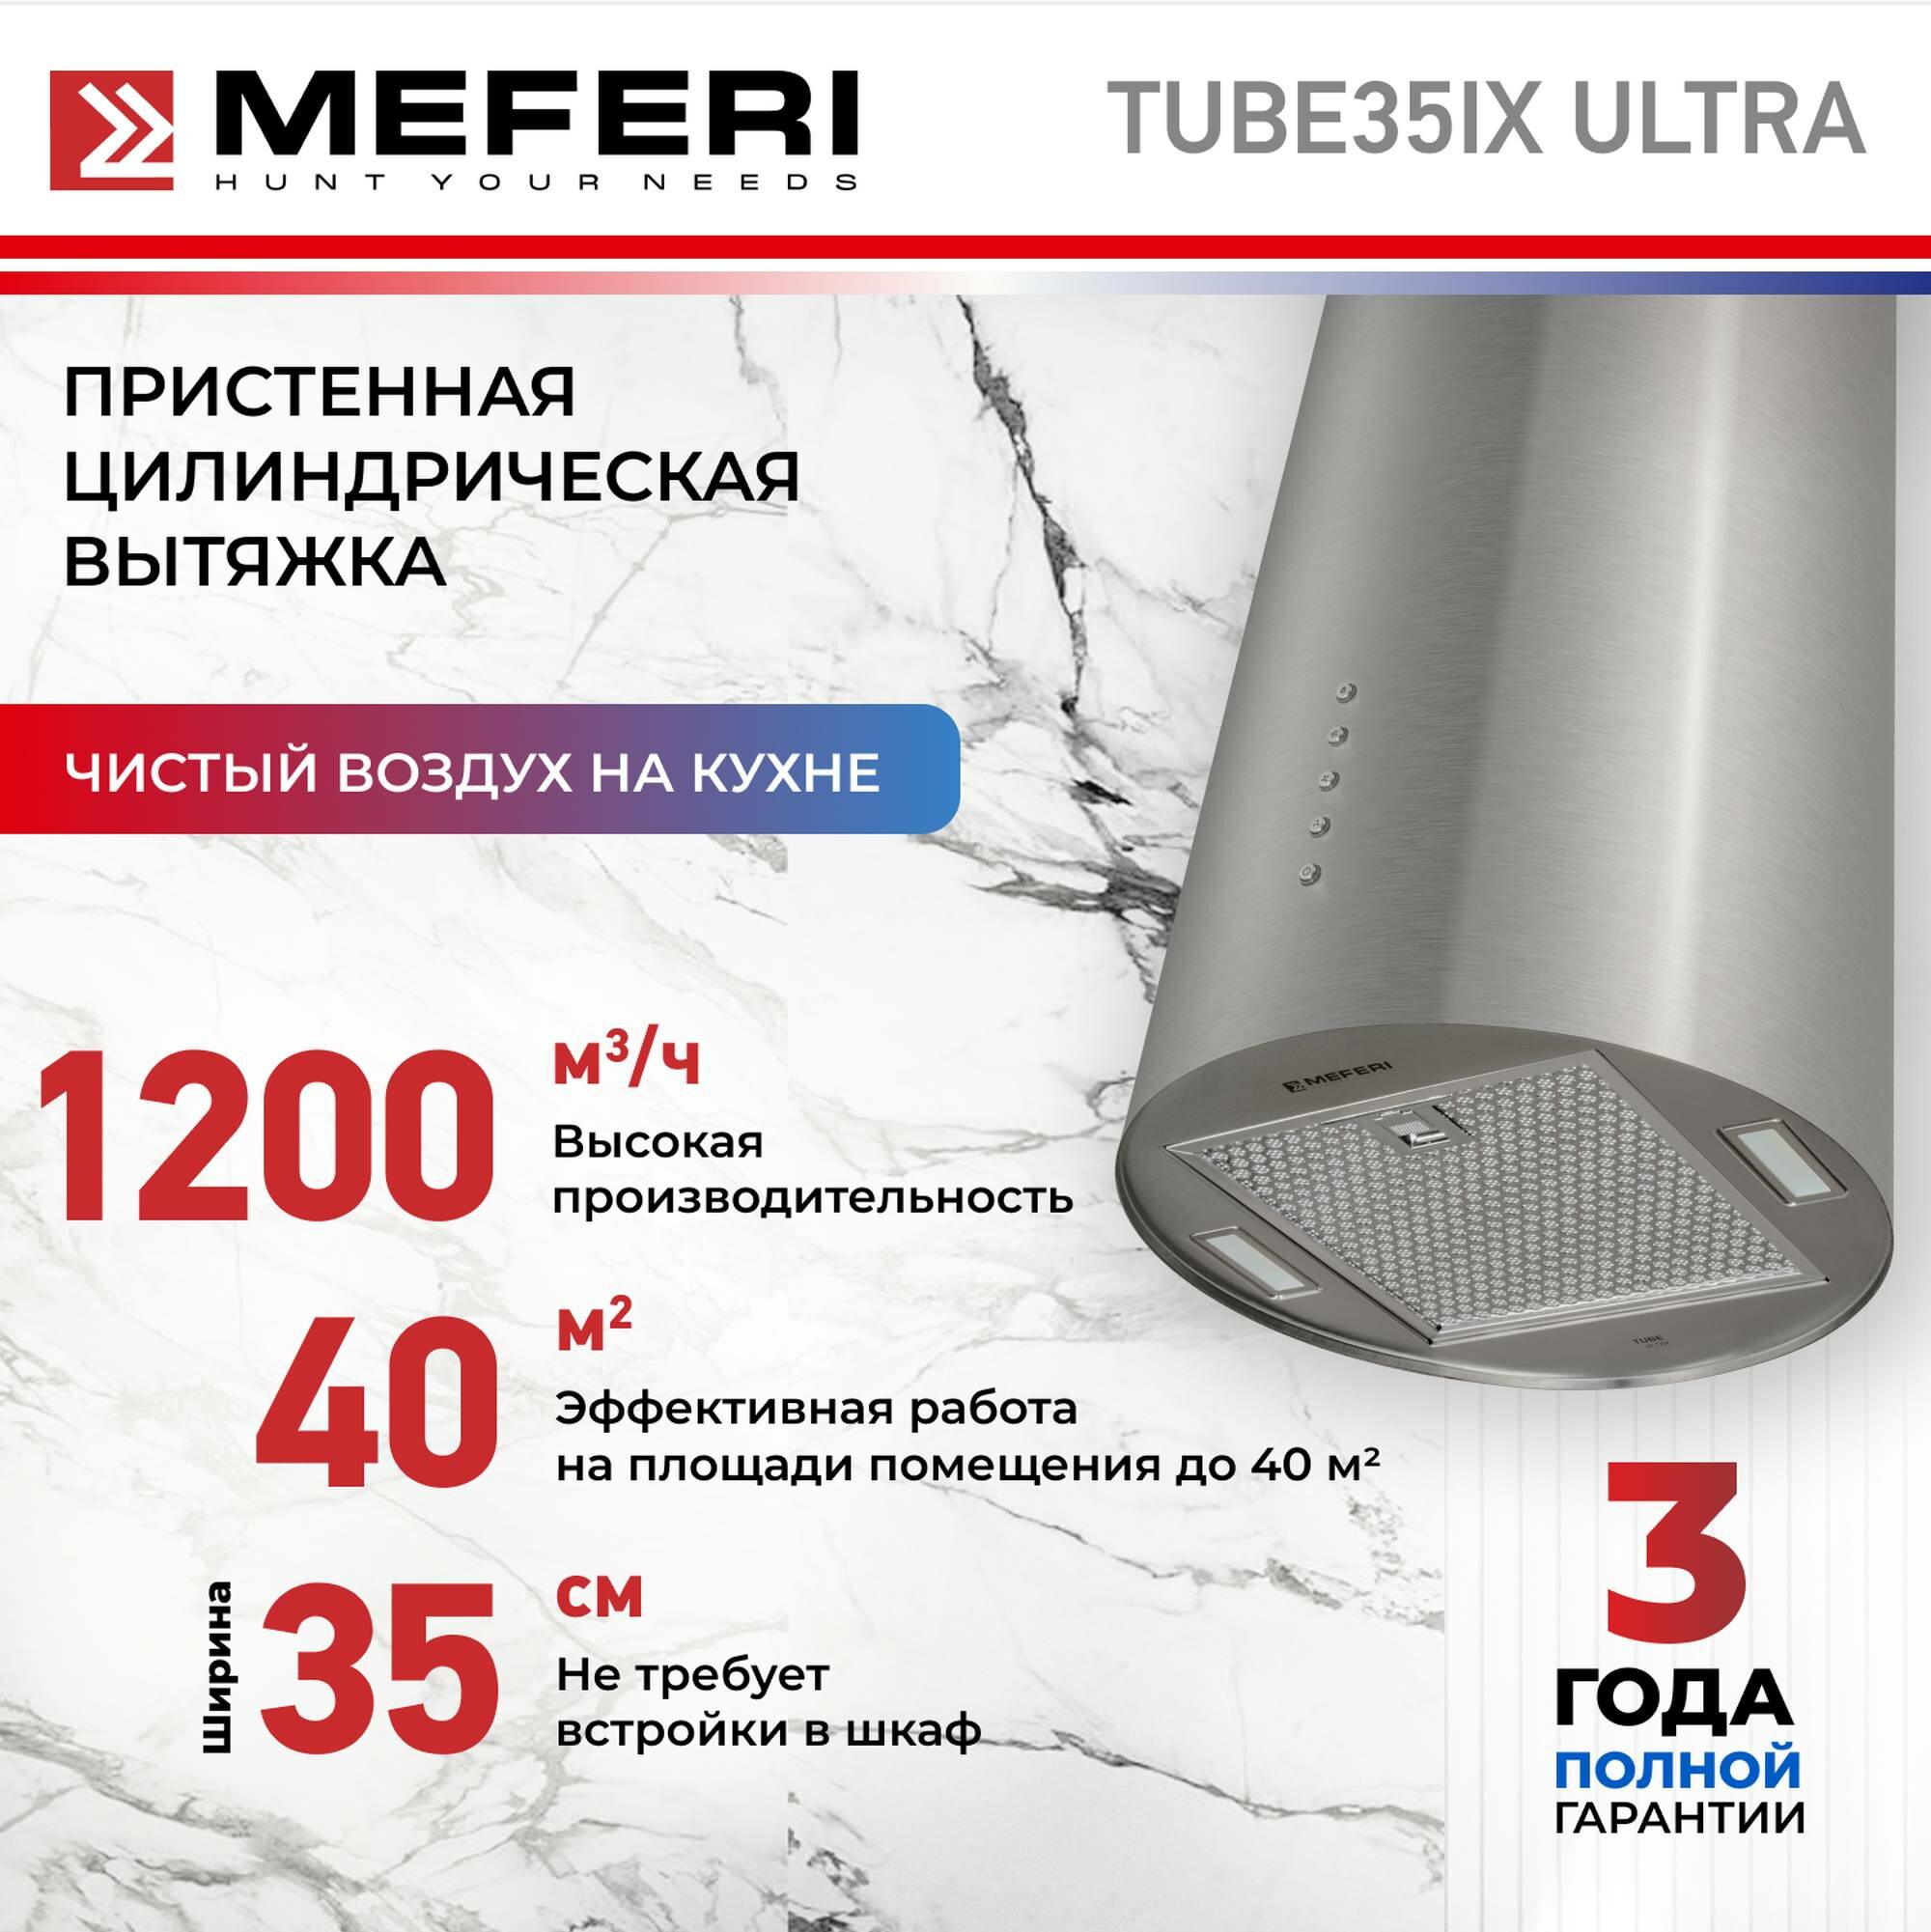 Цилиндрическая вытяжка MEFERI TUBE35 ULTRA